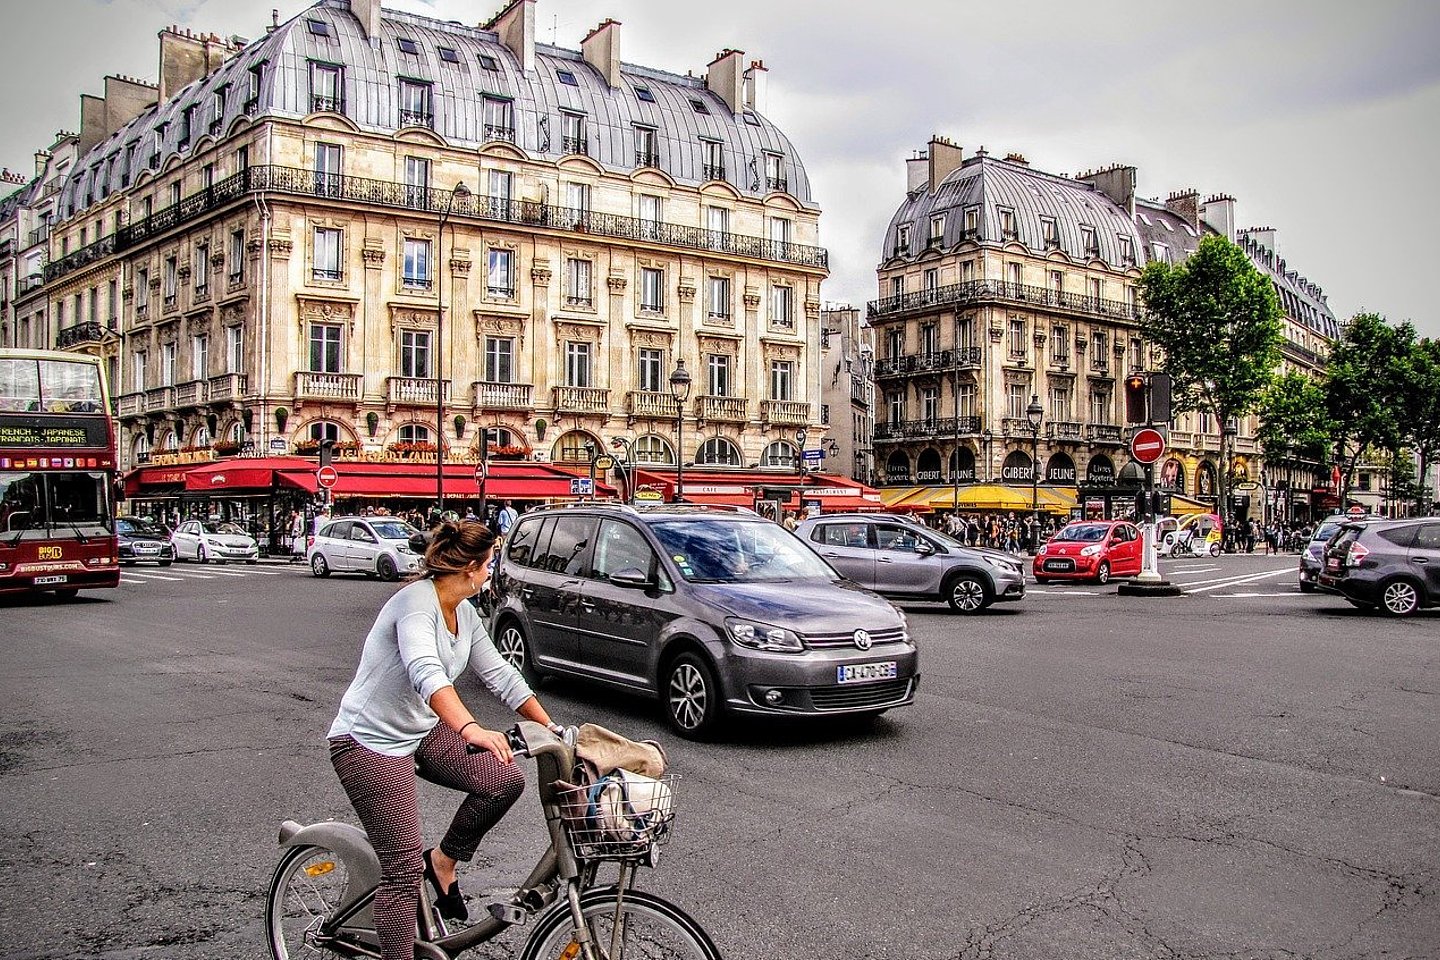 Stadtverkehr in Paris an einer Kreuzung. Fahrradfahrerin, Autos, Busse, Passanten